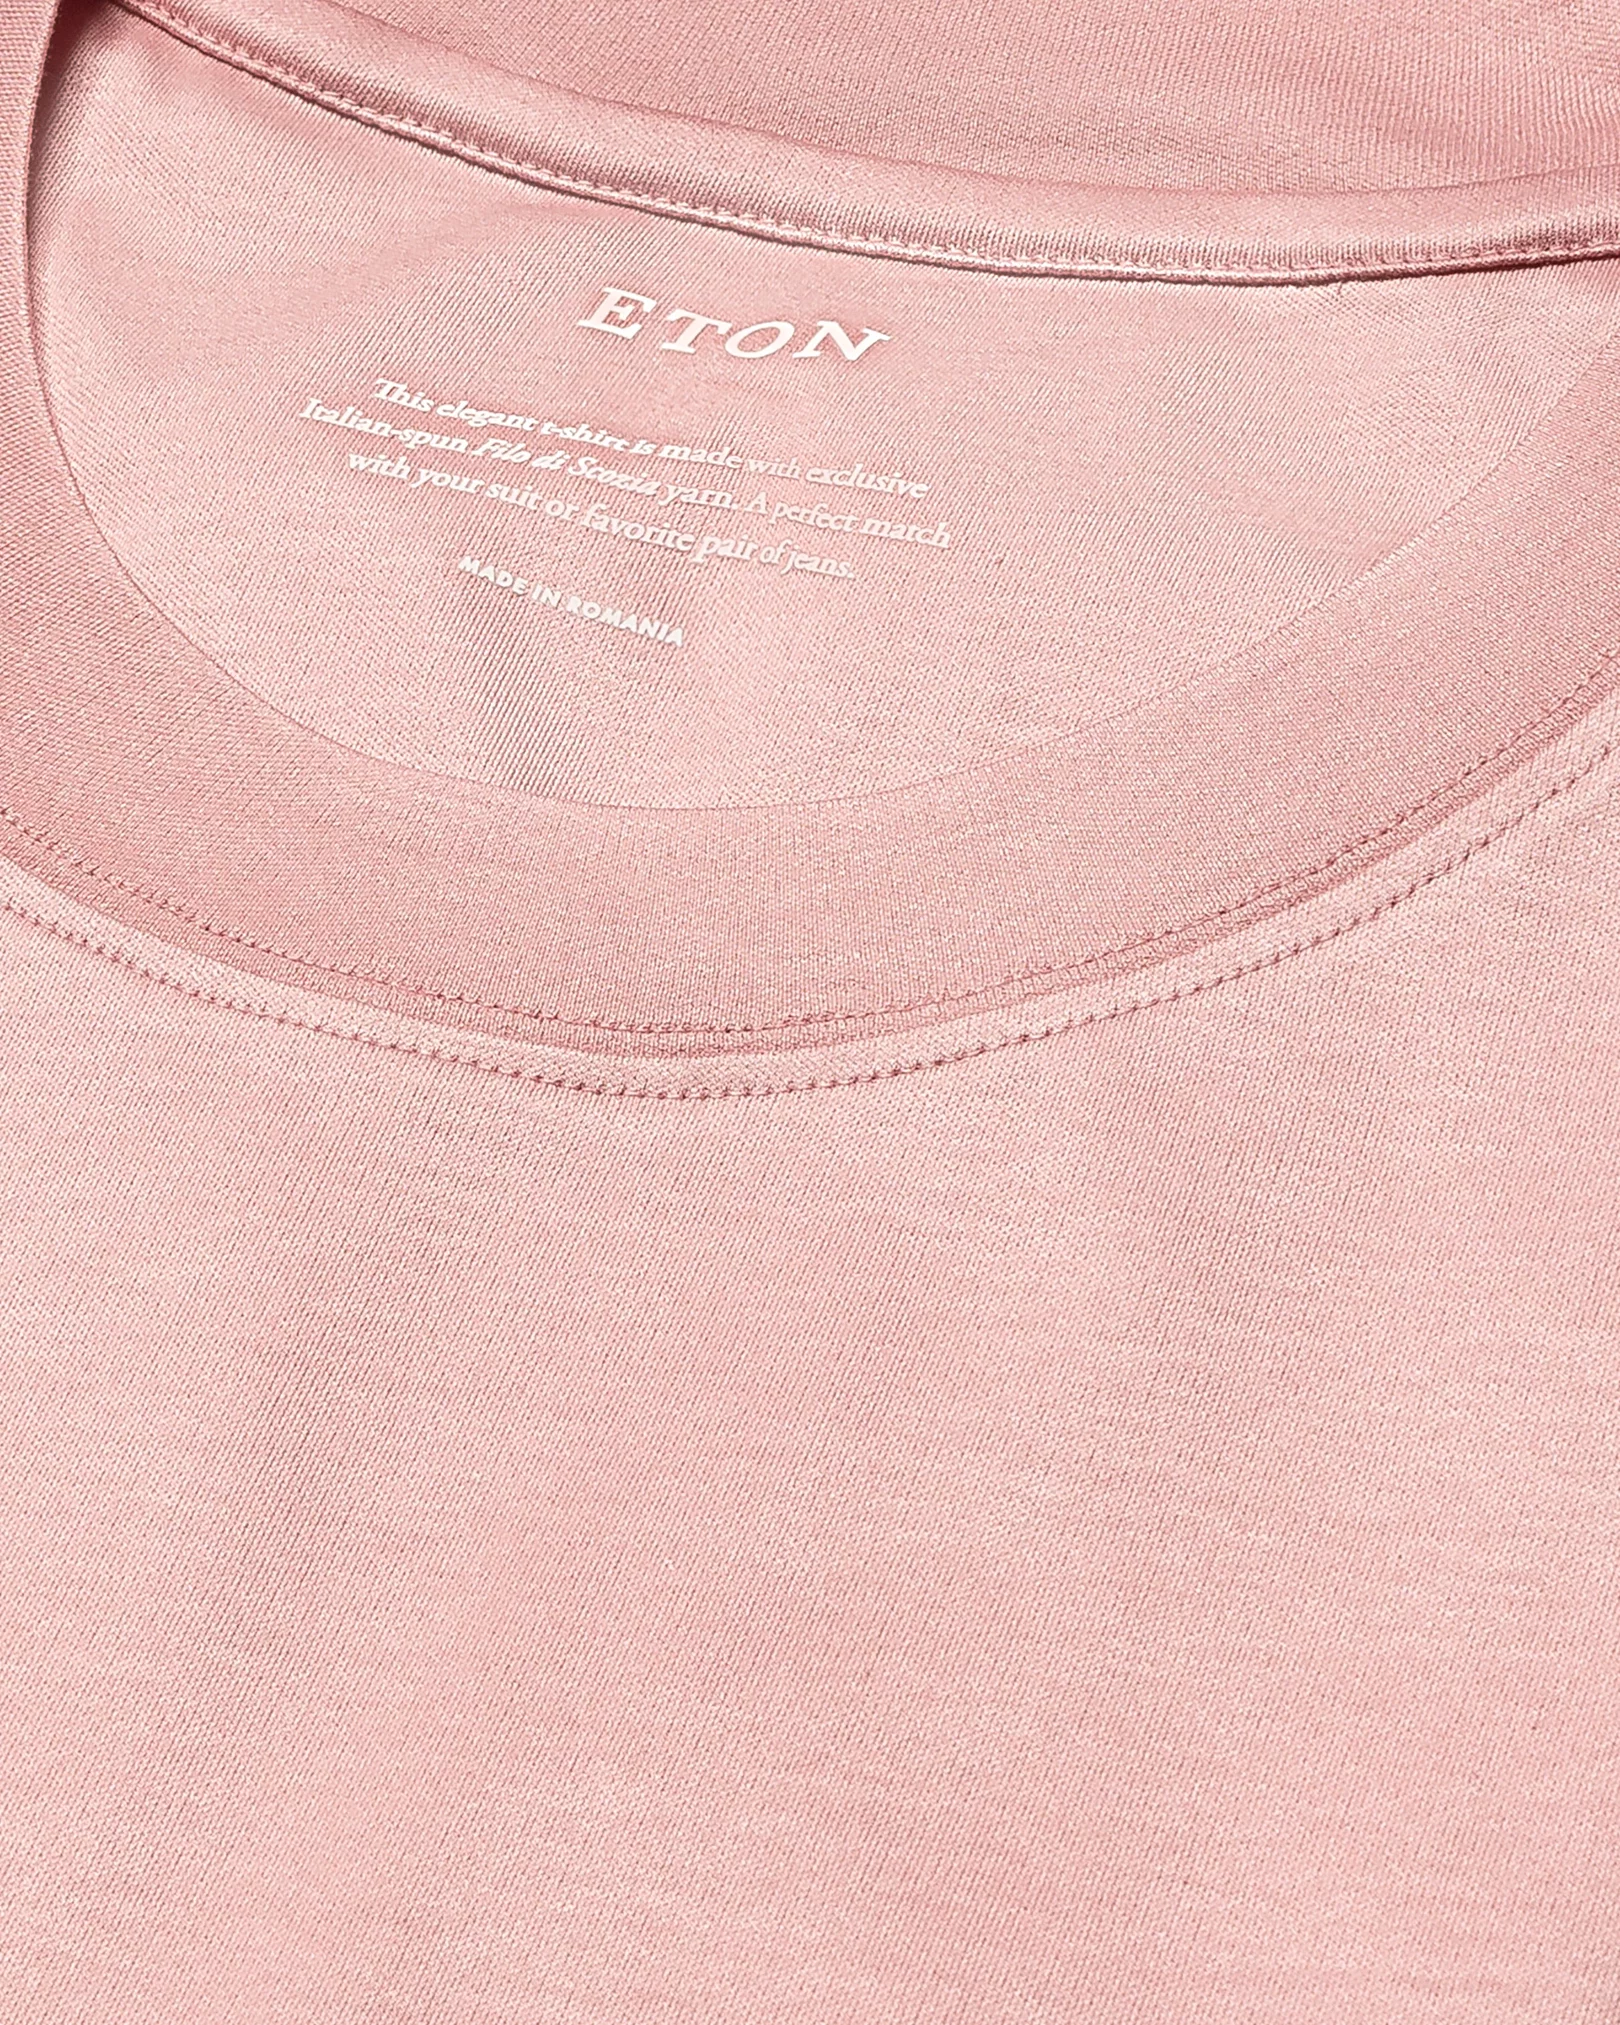 Eton - pink jersey t shirt